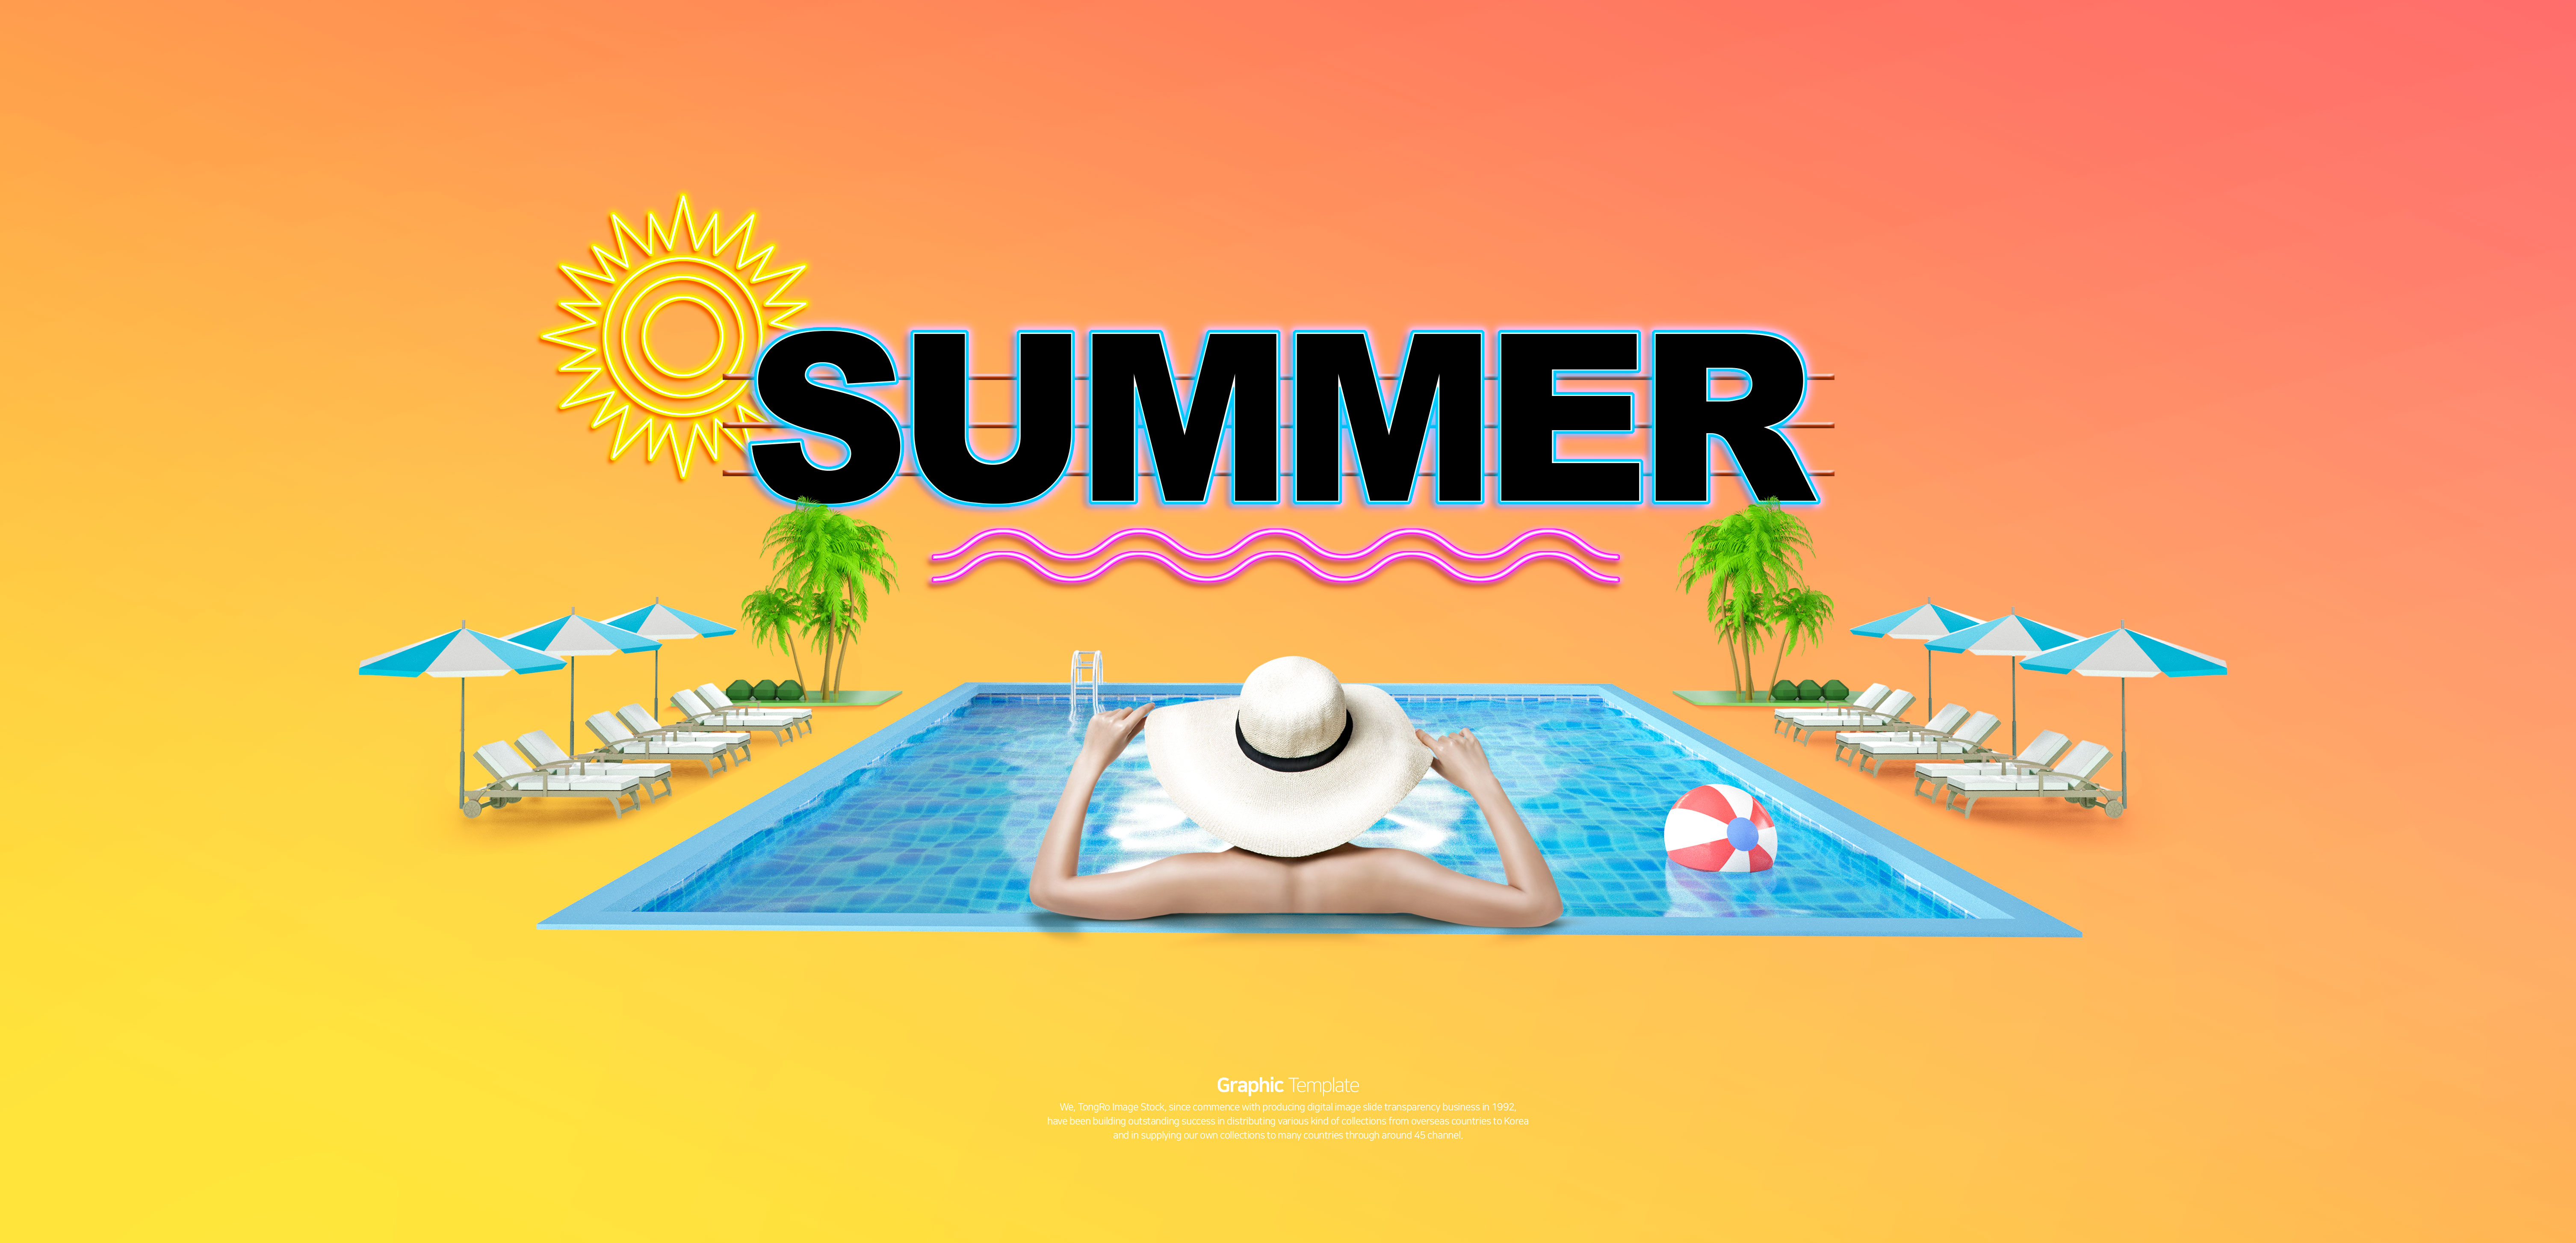 炎夏泳池派对活动促销广告Banner设计插图